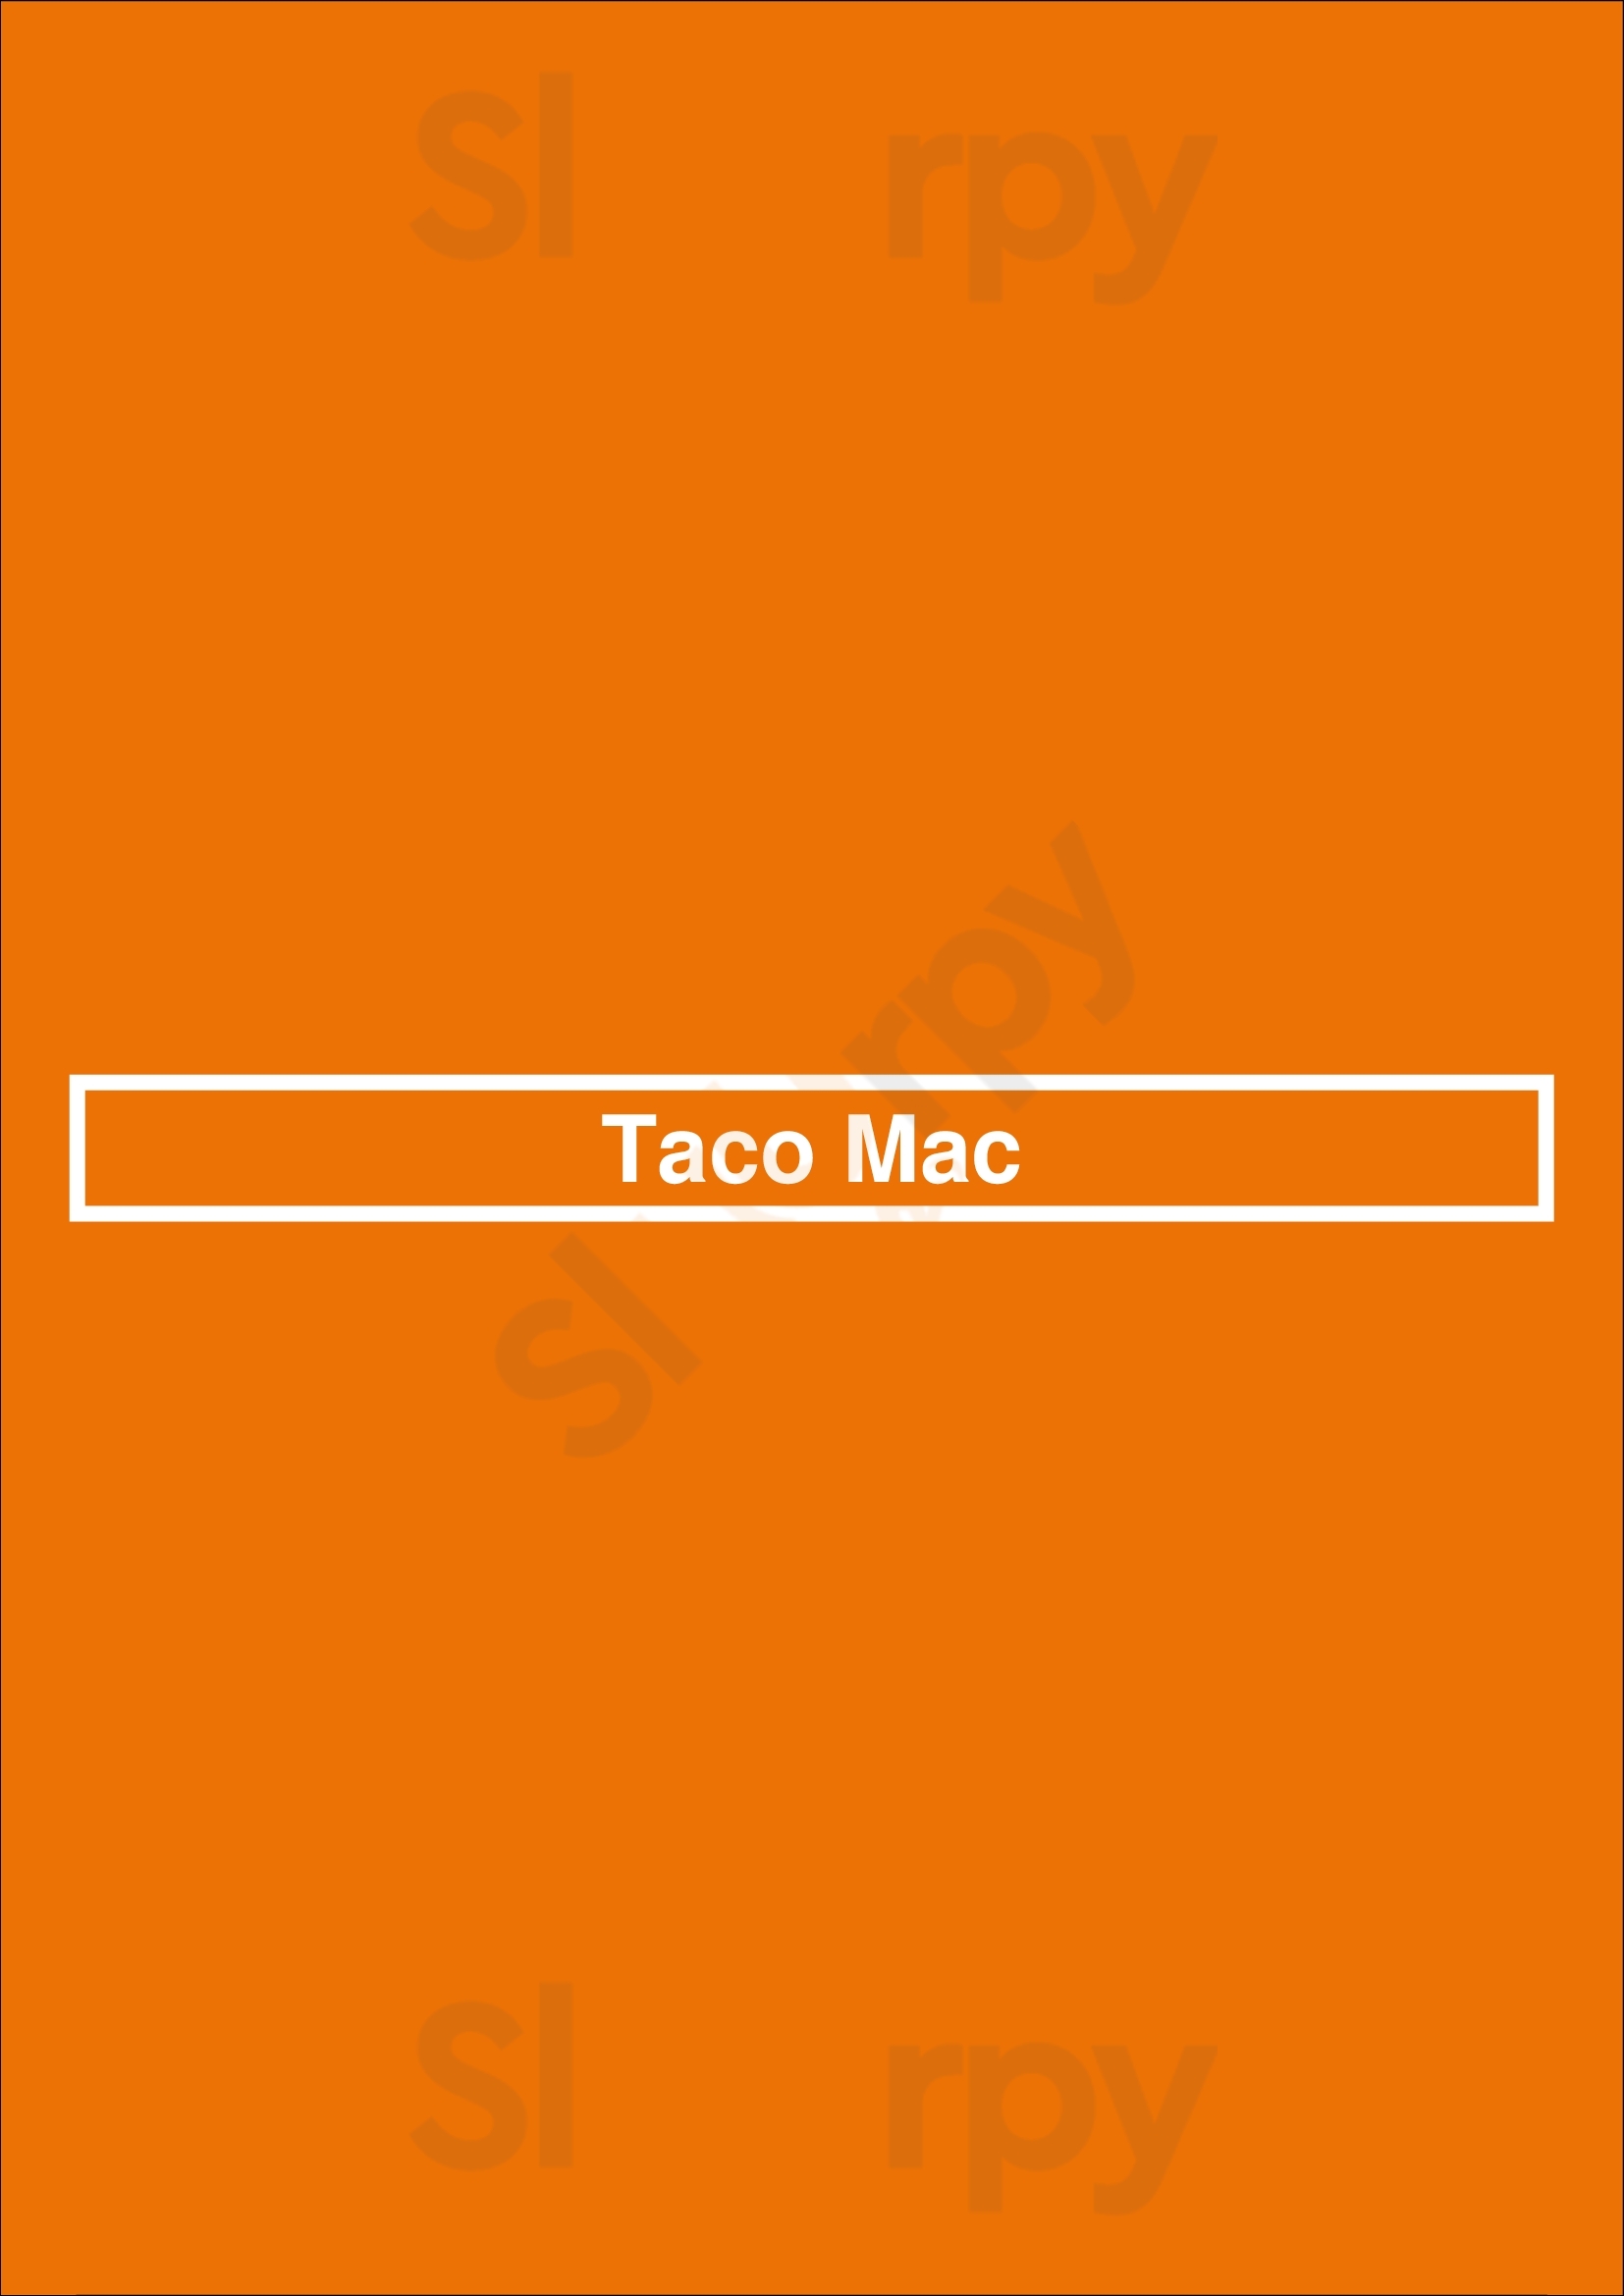 Taco Mac Atlanta Menu - 1